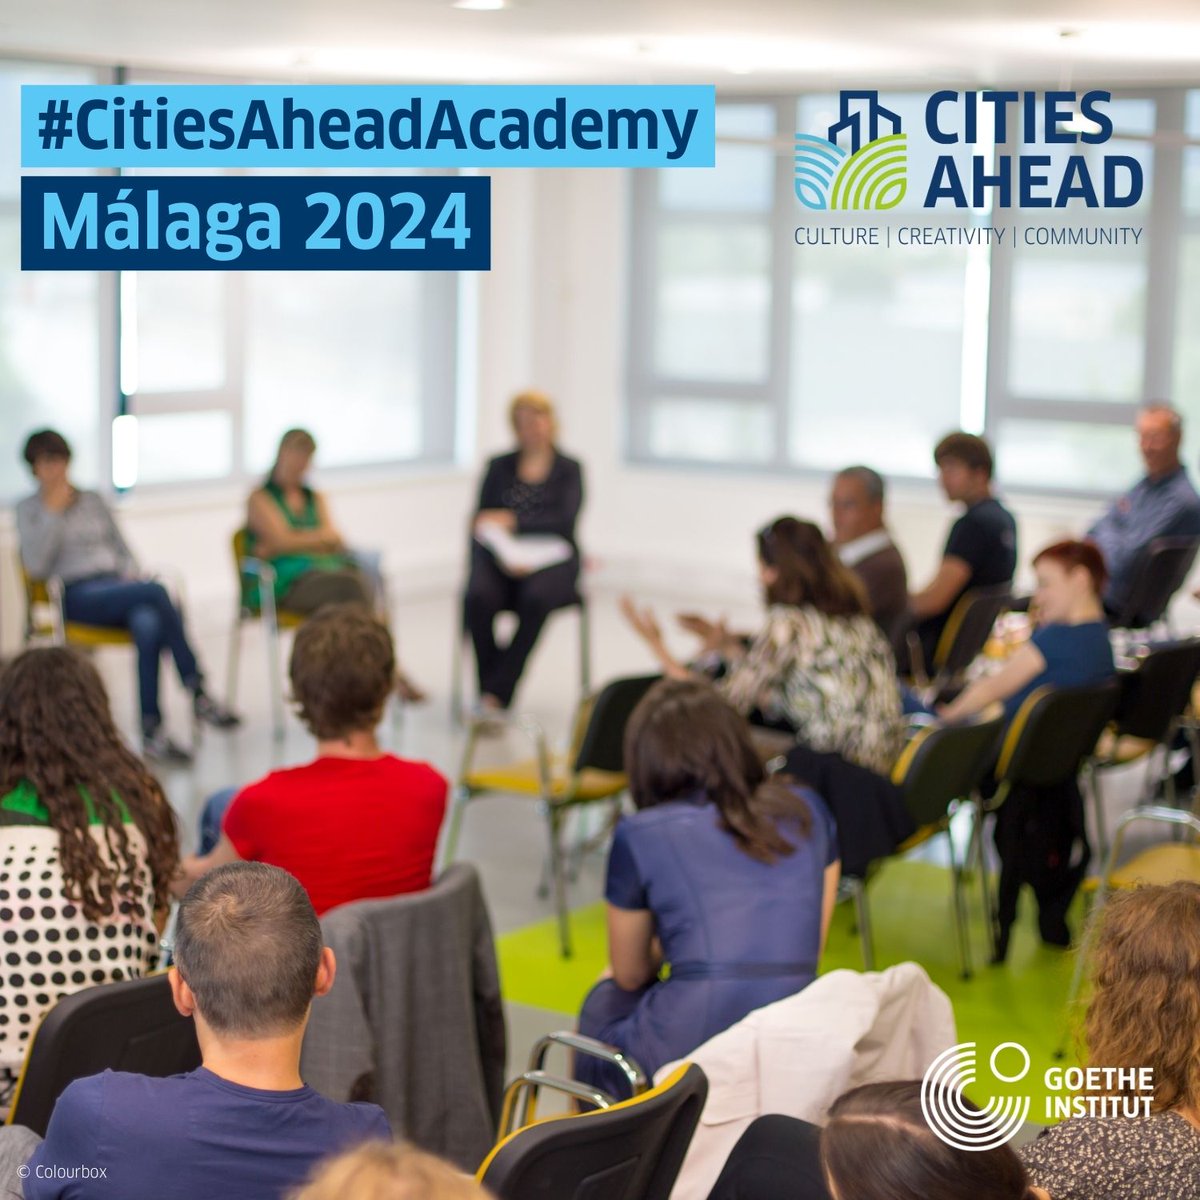 El 14 y 15 de mayo vuelve #CitiesAhead, el programa para ciudades culturales y creativas, ¡este año en #Málaga! Hablamos de #sostenibilidad en el #DesarrolloUrbanoCultural, de estrategias culturales, y de la utilización de datos culturales. Más en: goethe.de/ins/es/es/kul/…